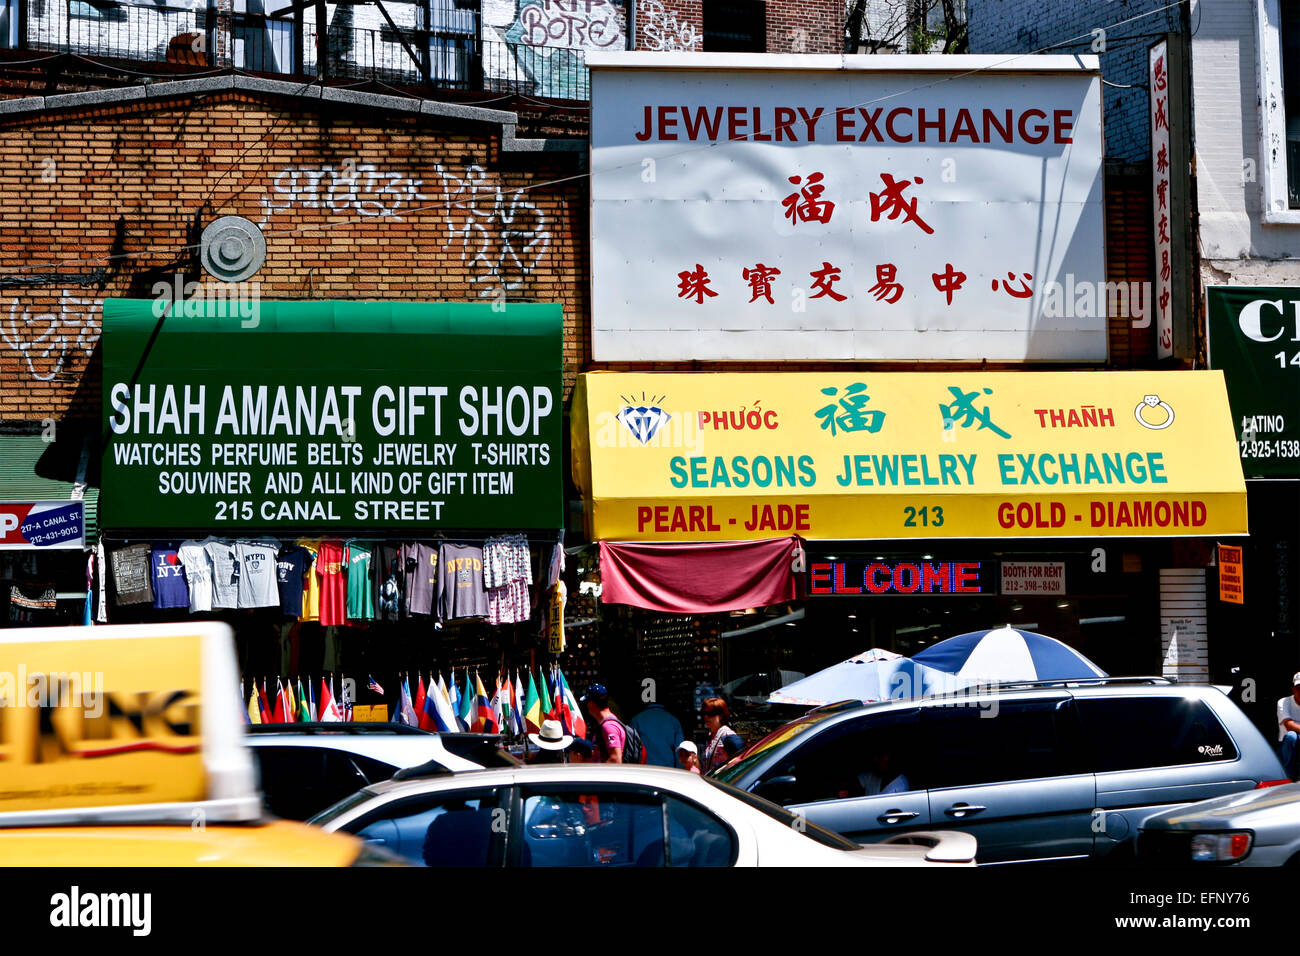 Geschäfte in geschäftiger Chinatown, malerisches Viertel. Chinesische Gemeinschaft. Einkaufen, Verkehr. Manhattan, New York, NY, USA, Vereinigte Staaten von Amerika. Stockfoto